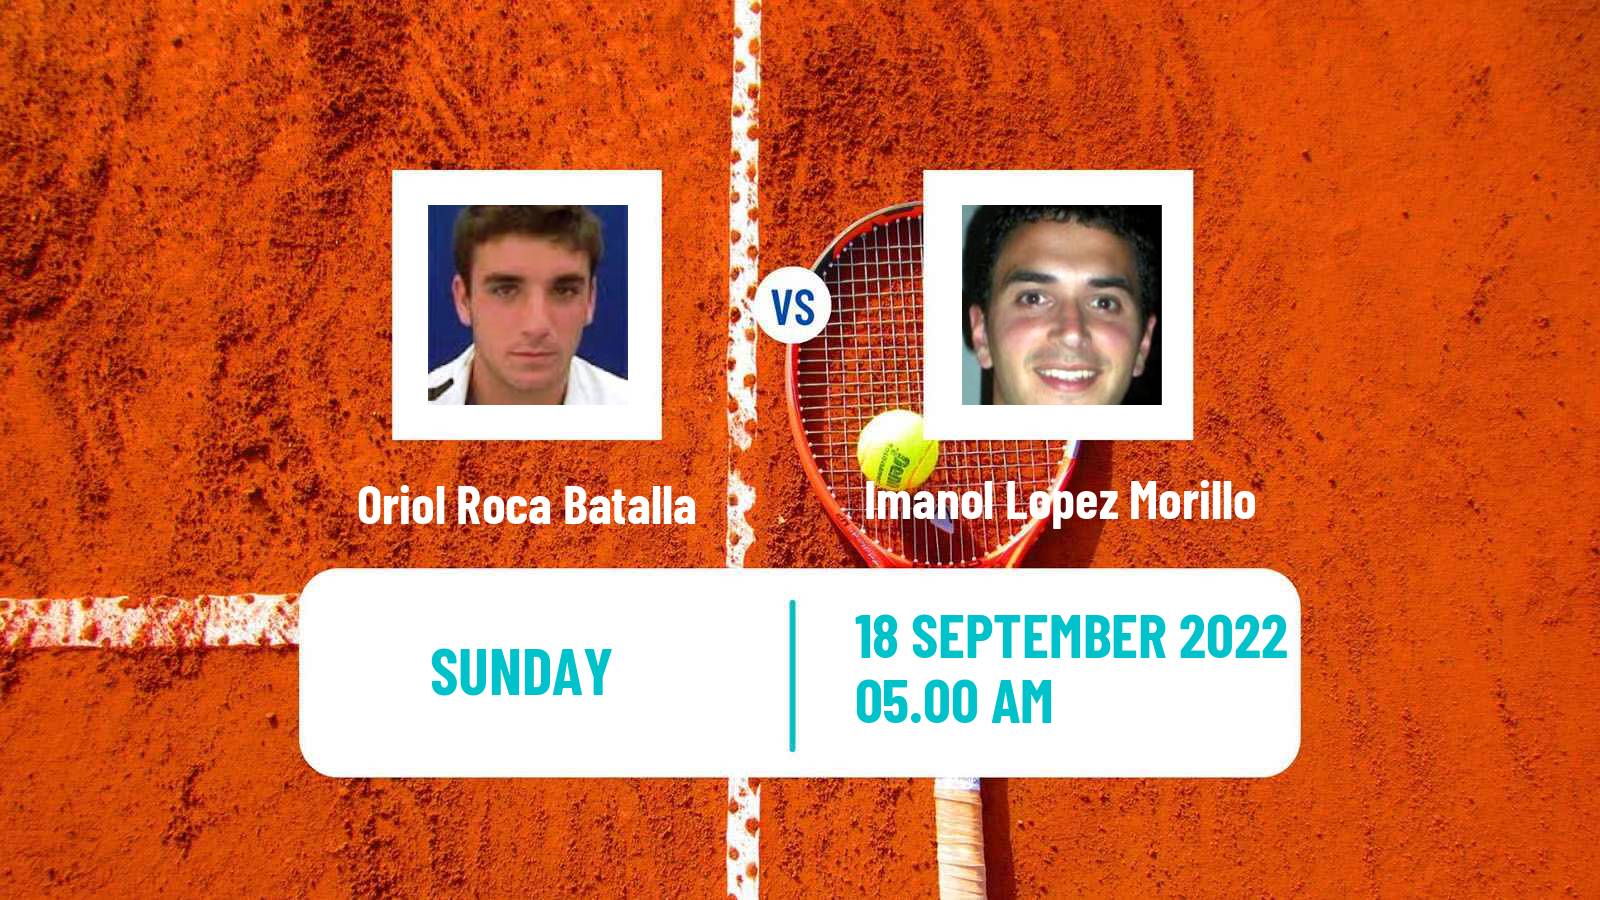 Tennis ATP Challenger Oriol Roca Batalla - Imanol Lopez Morillo